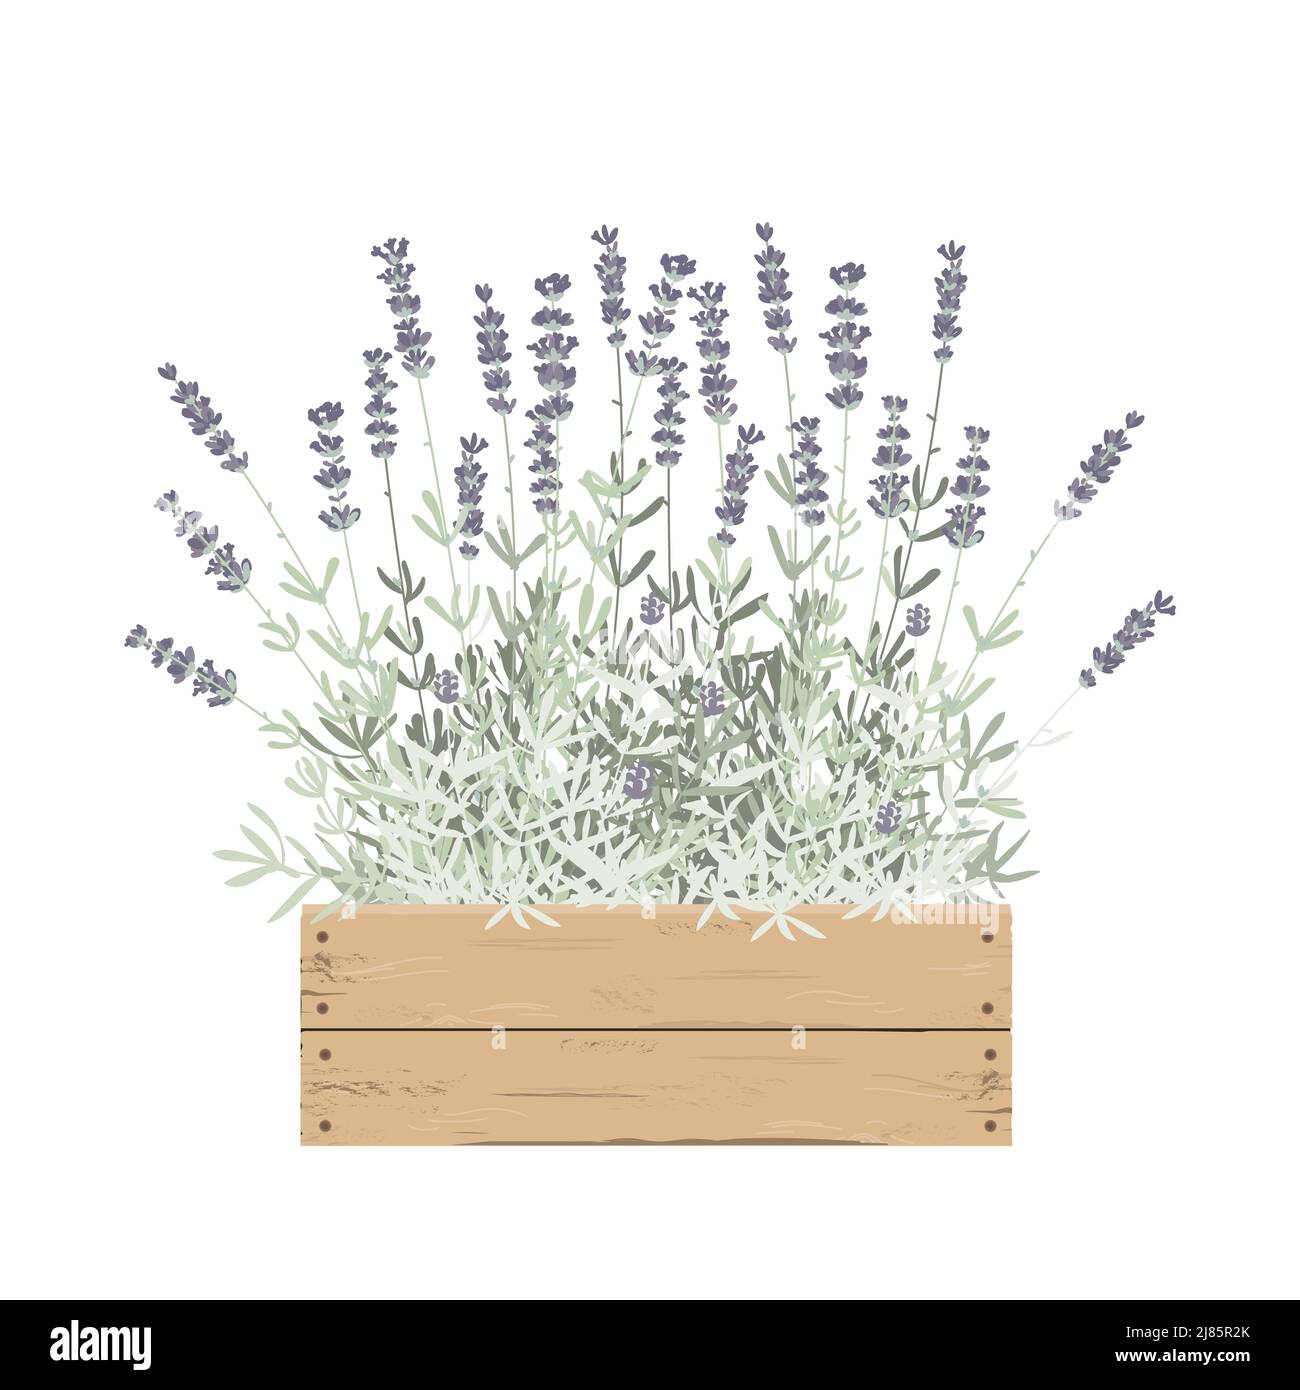 Lavendel Pflanzen Blumen in einer Holzkiste. Design-Element mit Karte oder Dekor. Vektorgrafik Stock Vektor